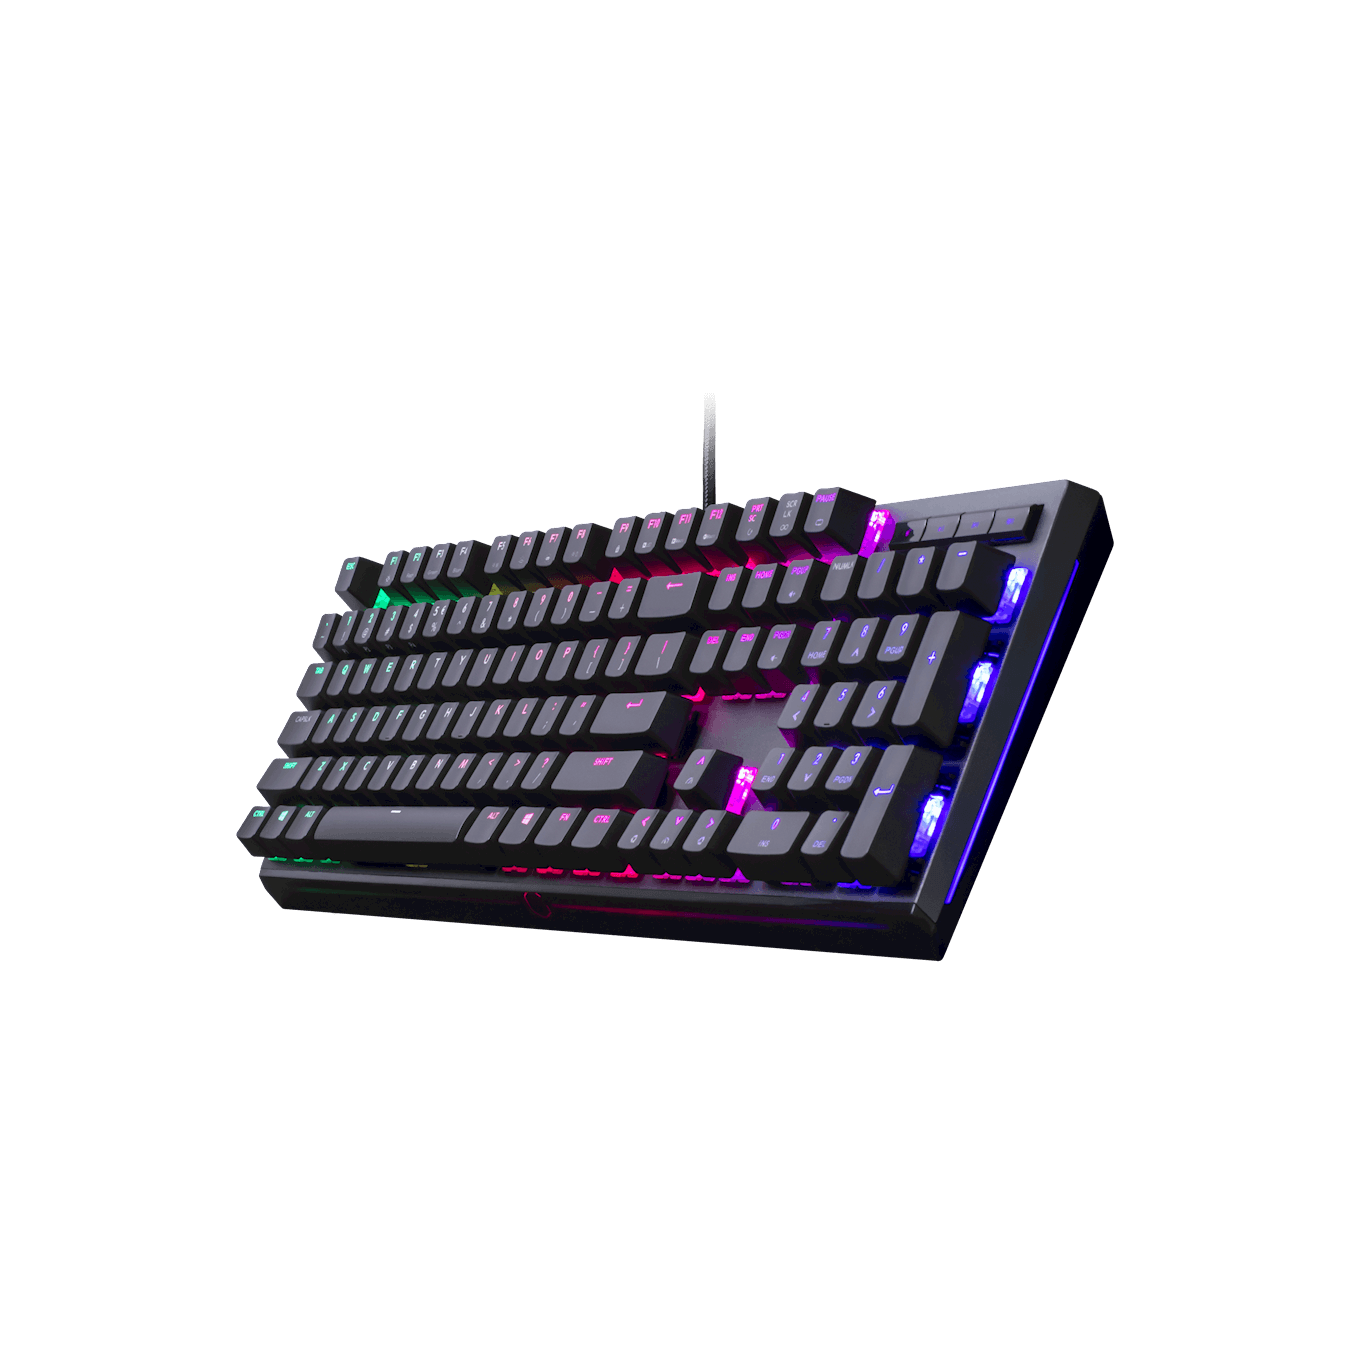 Cooler Master MasterKeys MK750 RGB Wired Mechanical Gaming Keyboard